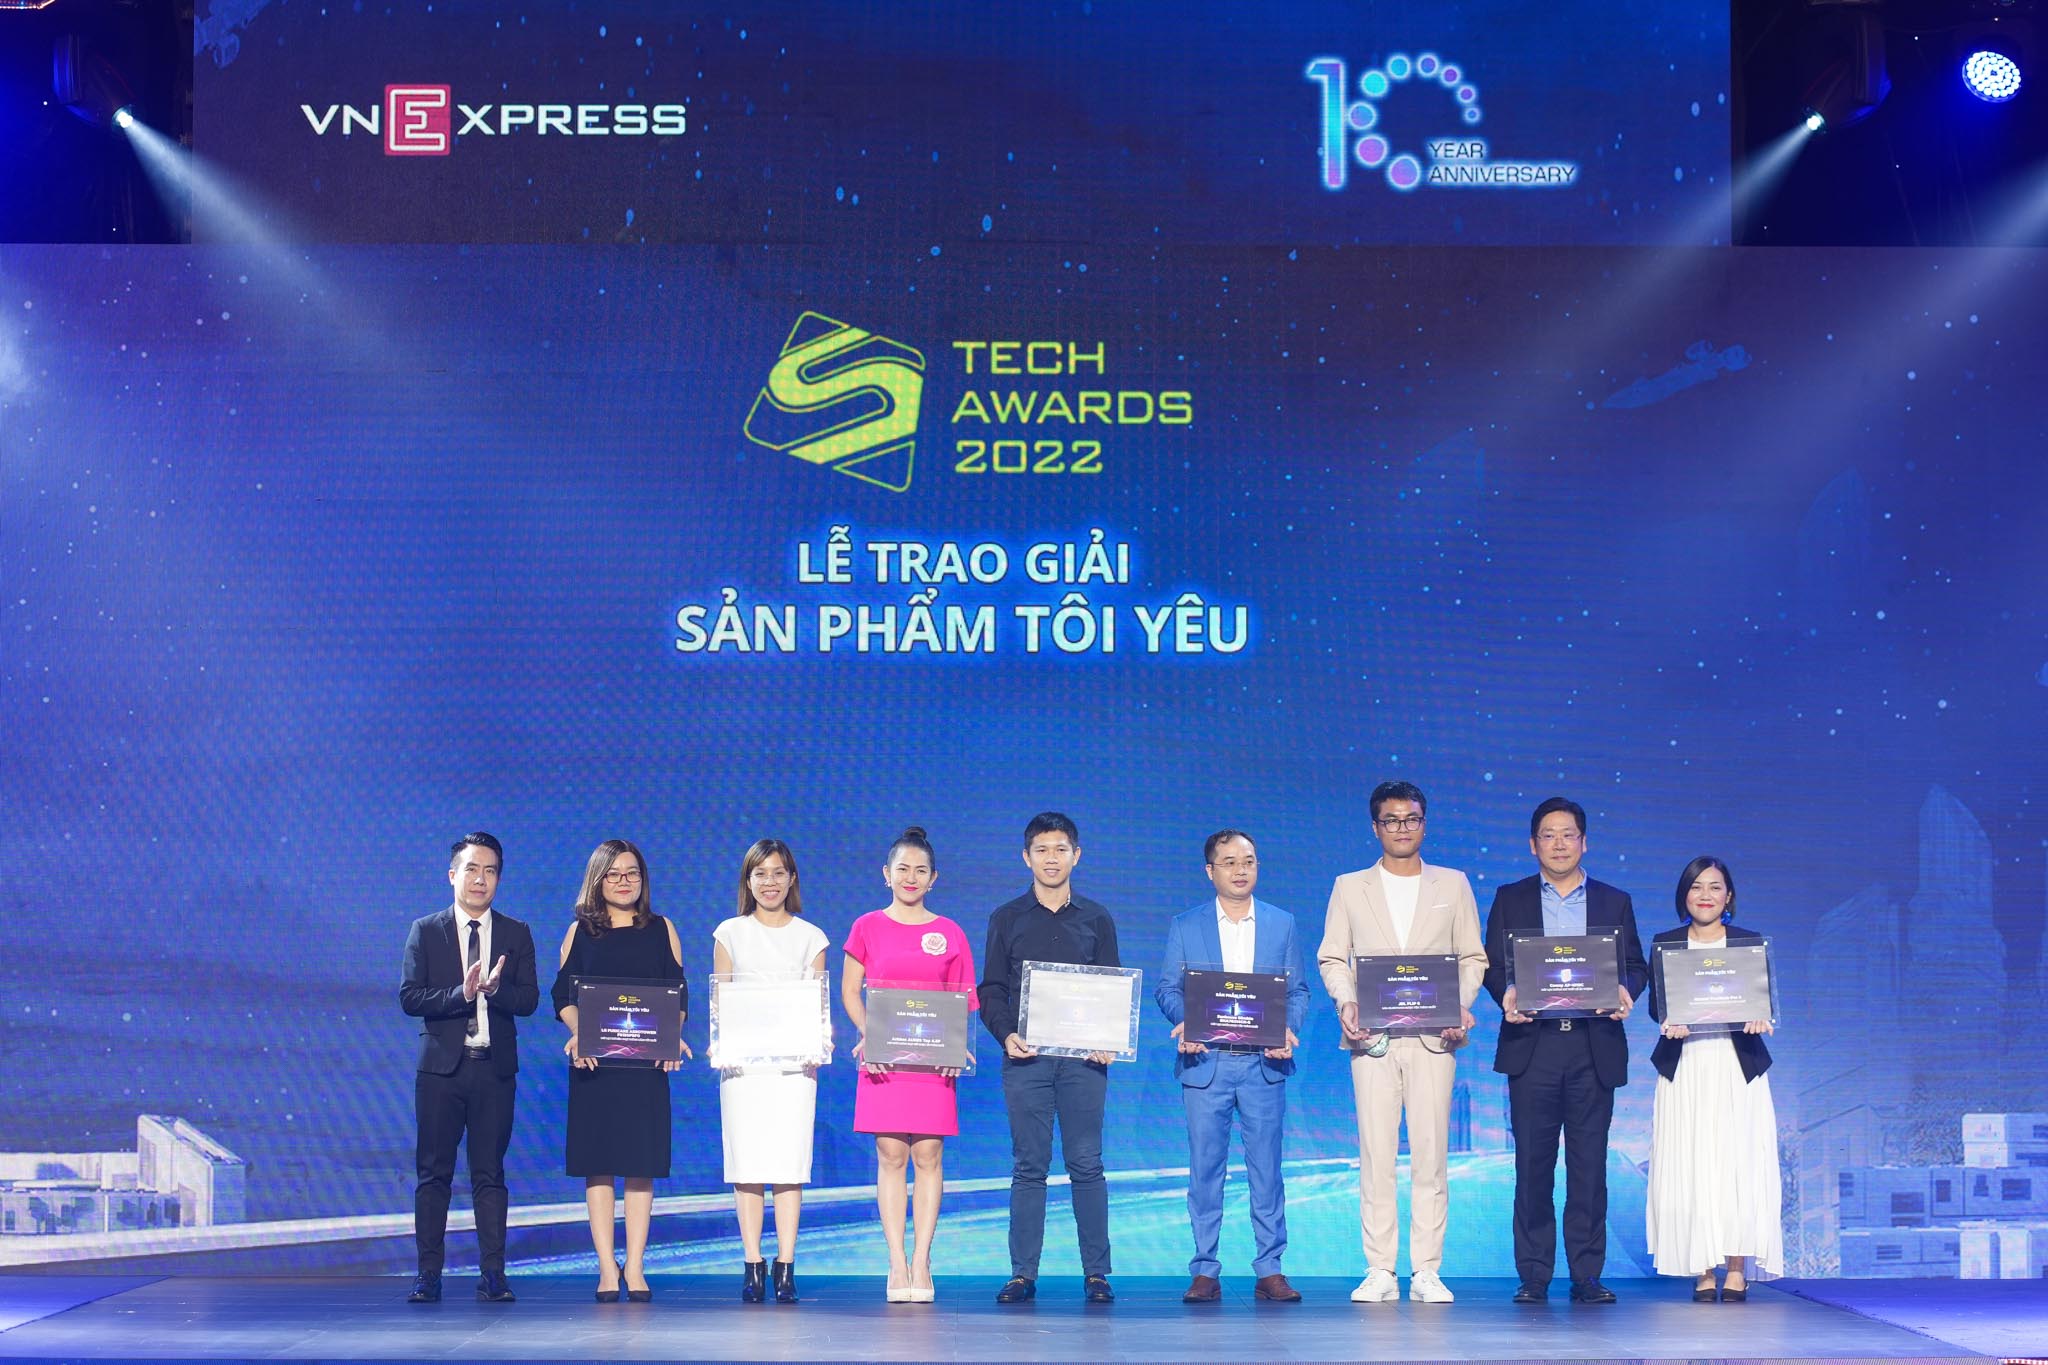 LG xuất sắc chiến thắng nhiều hạng mục nổi bật tại Tech Awards 2022